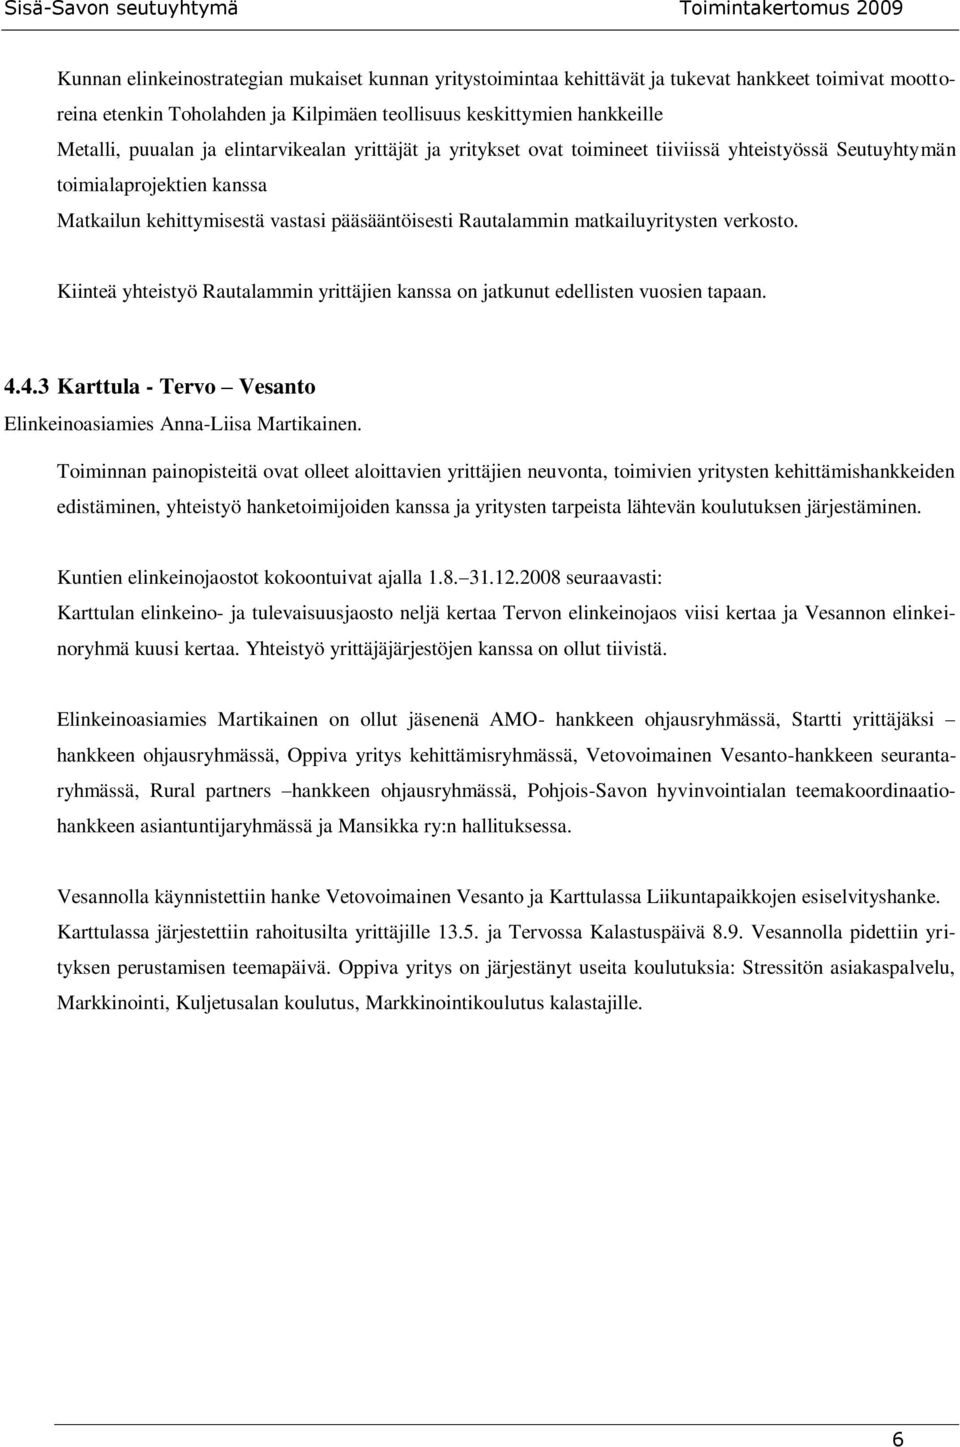 verkosto. Kiinteä yhteistyö Rautalammin yrittäjien kanssa on jatkunut edellisten vuosien tapaan. 4.4.3 Karttula - Tervo Vesanto Elinkeinoasiamies Anna-Liisa Martikainen.